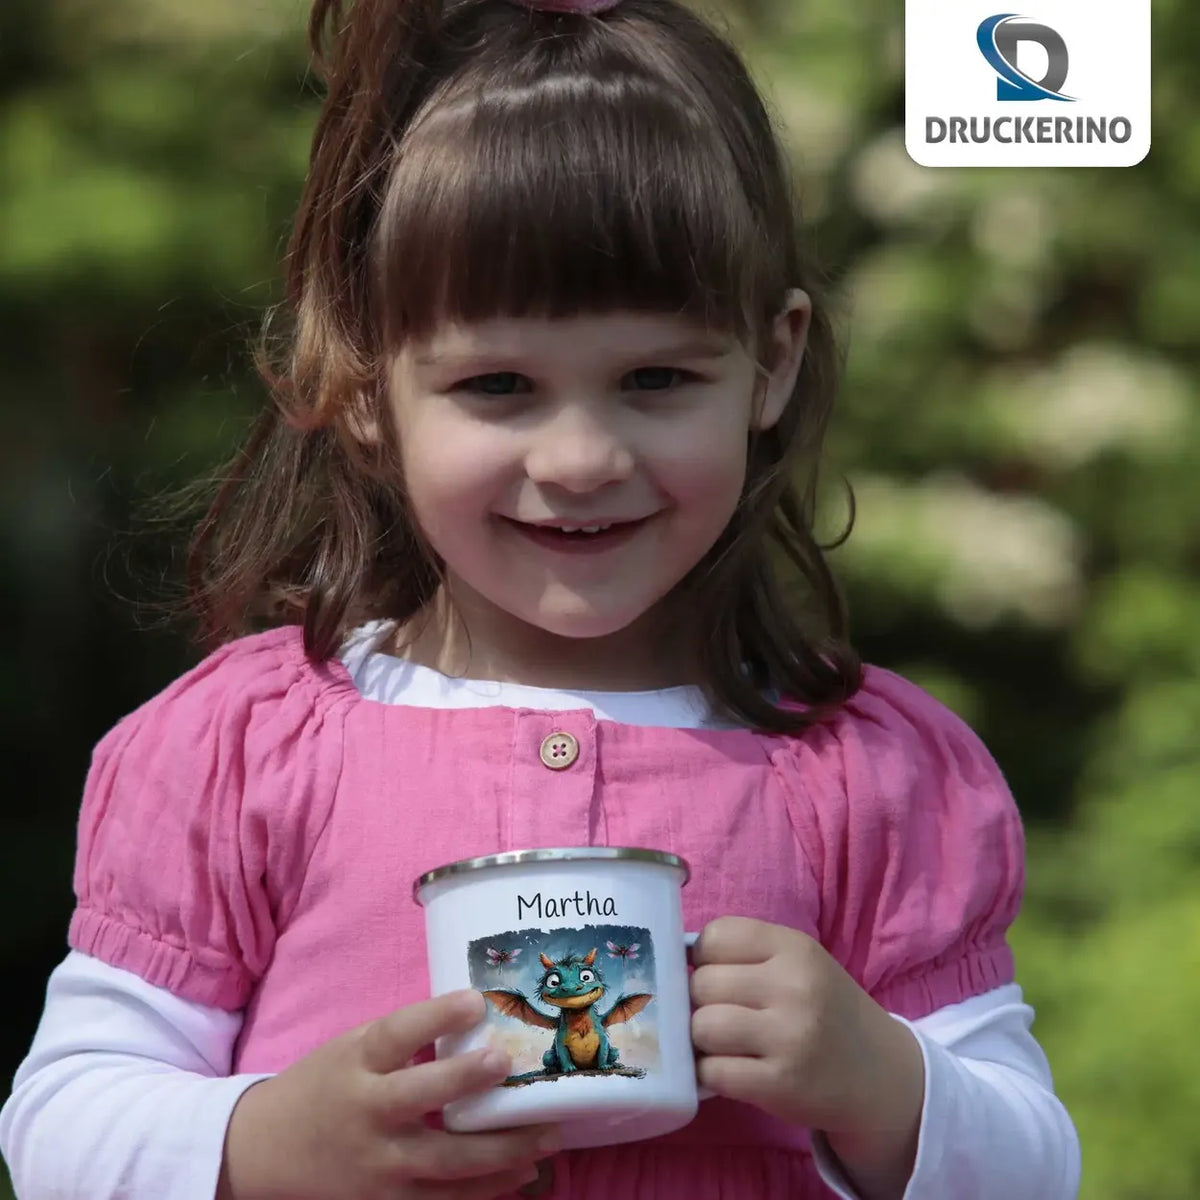 Drachenfreund Emaille Tasse für Kinder personalisiert Emailletasse Druckerino   